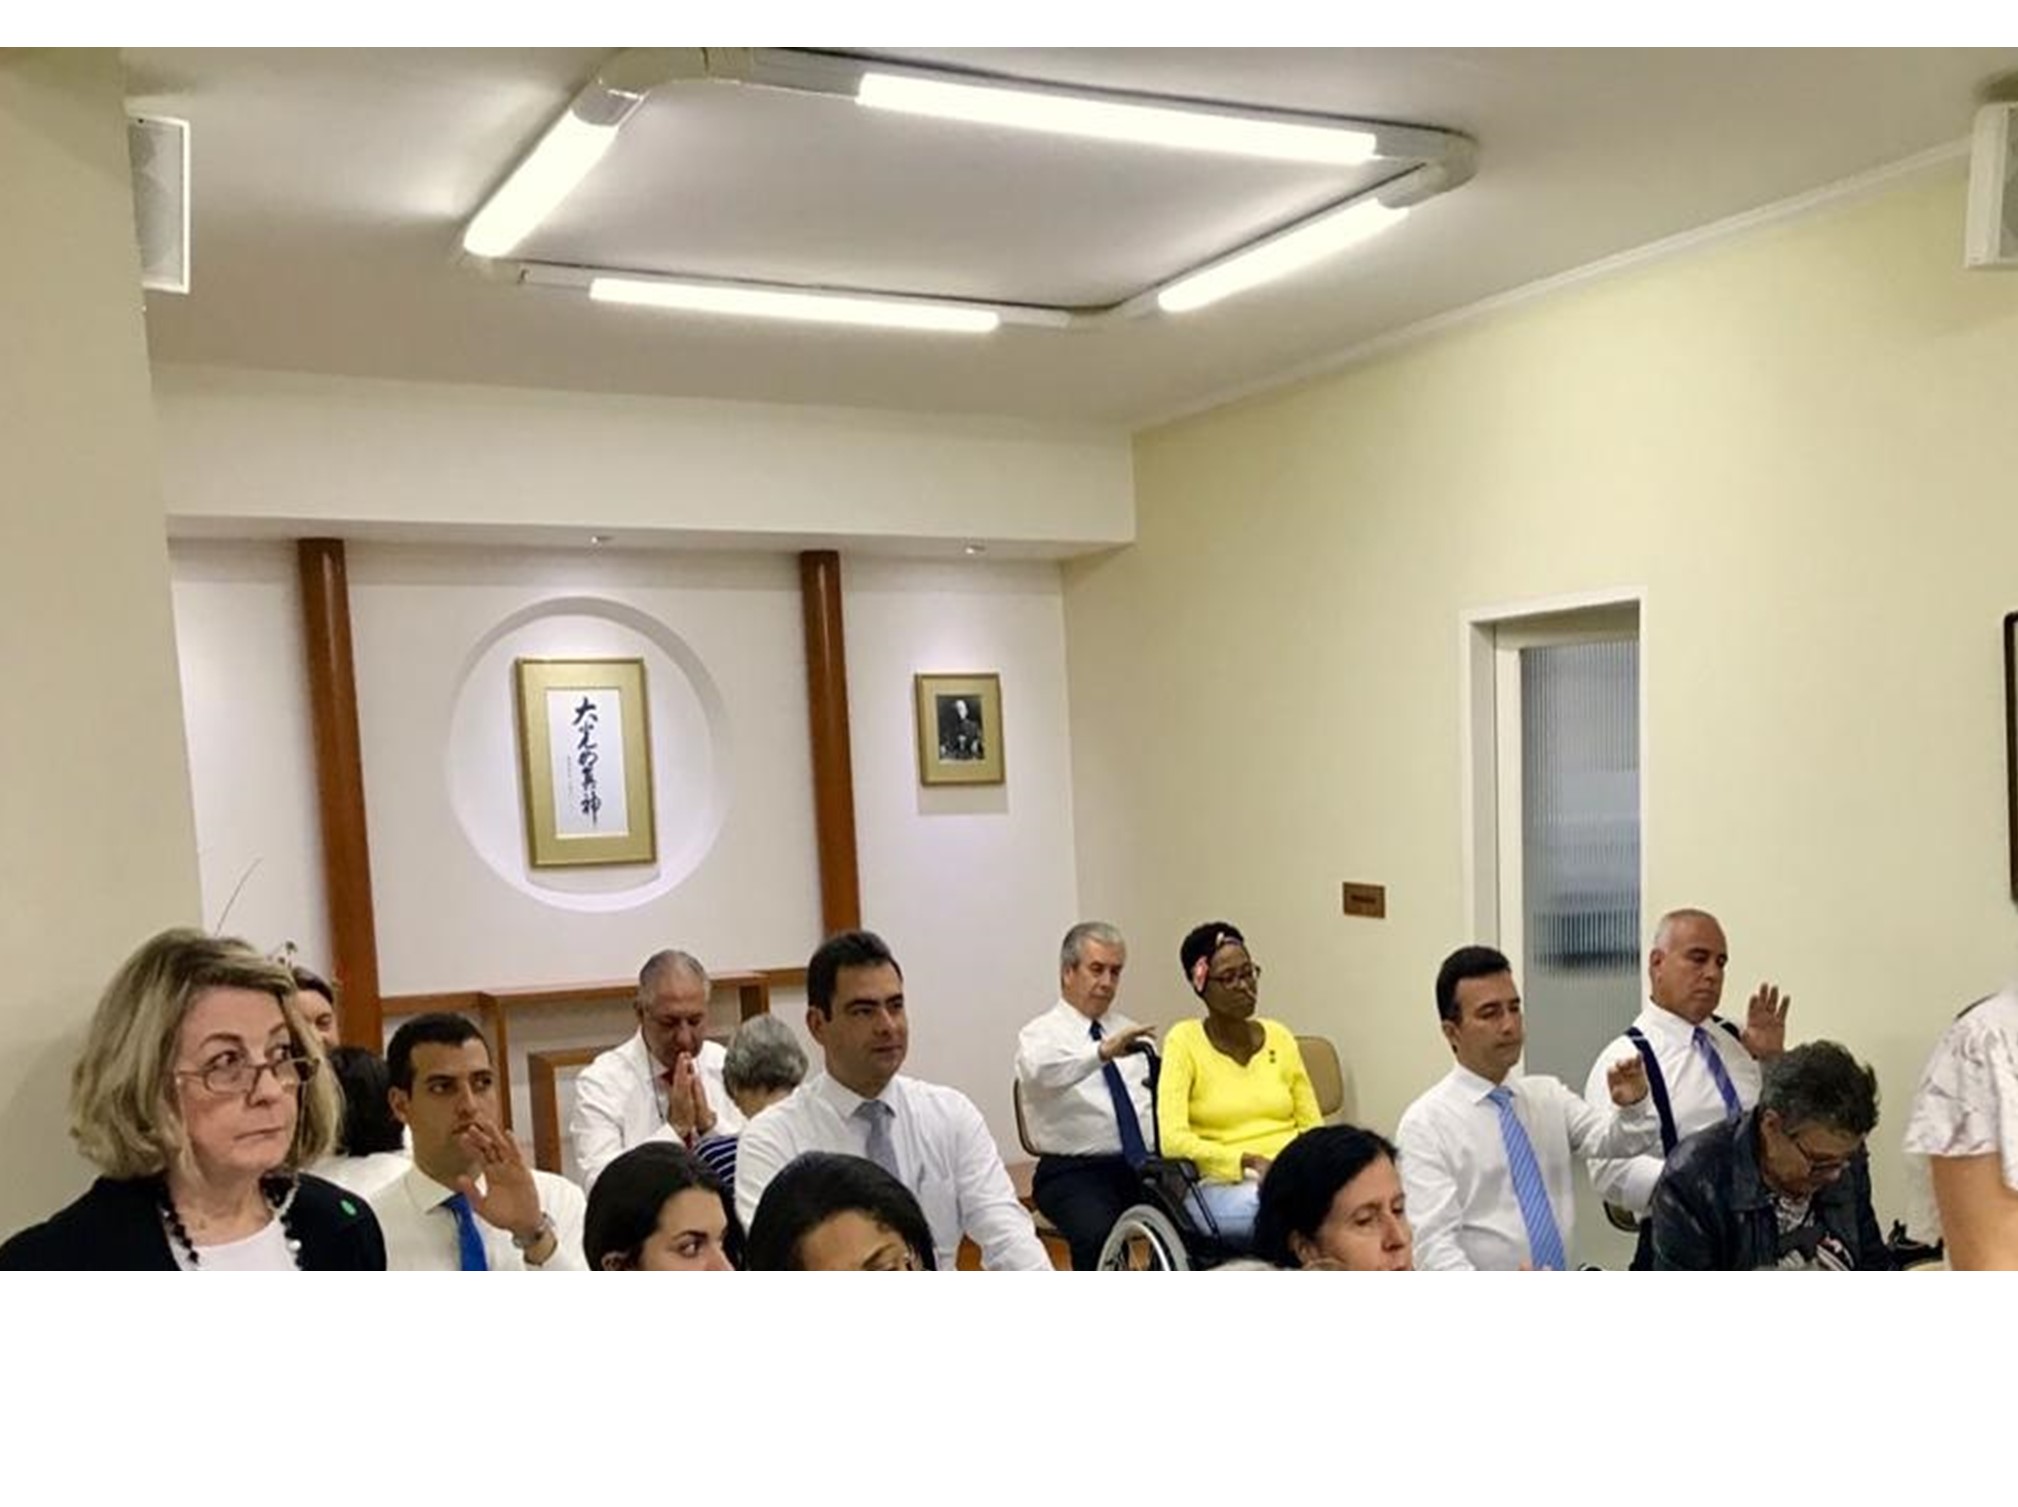 Presidente da IMMB visita messiânicos de São Caetano do Sul (SP) e anuncia meta de construir igreja